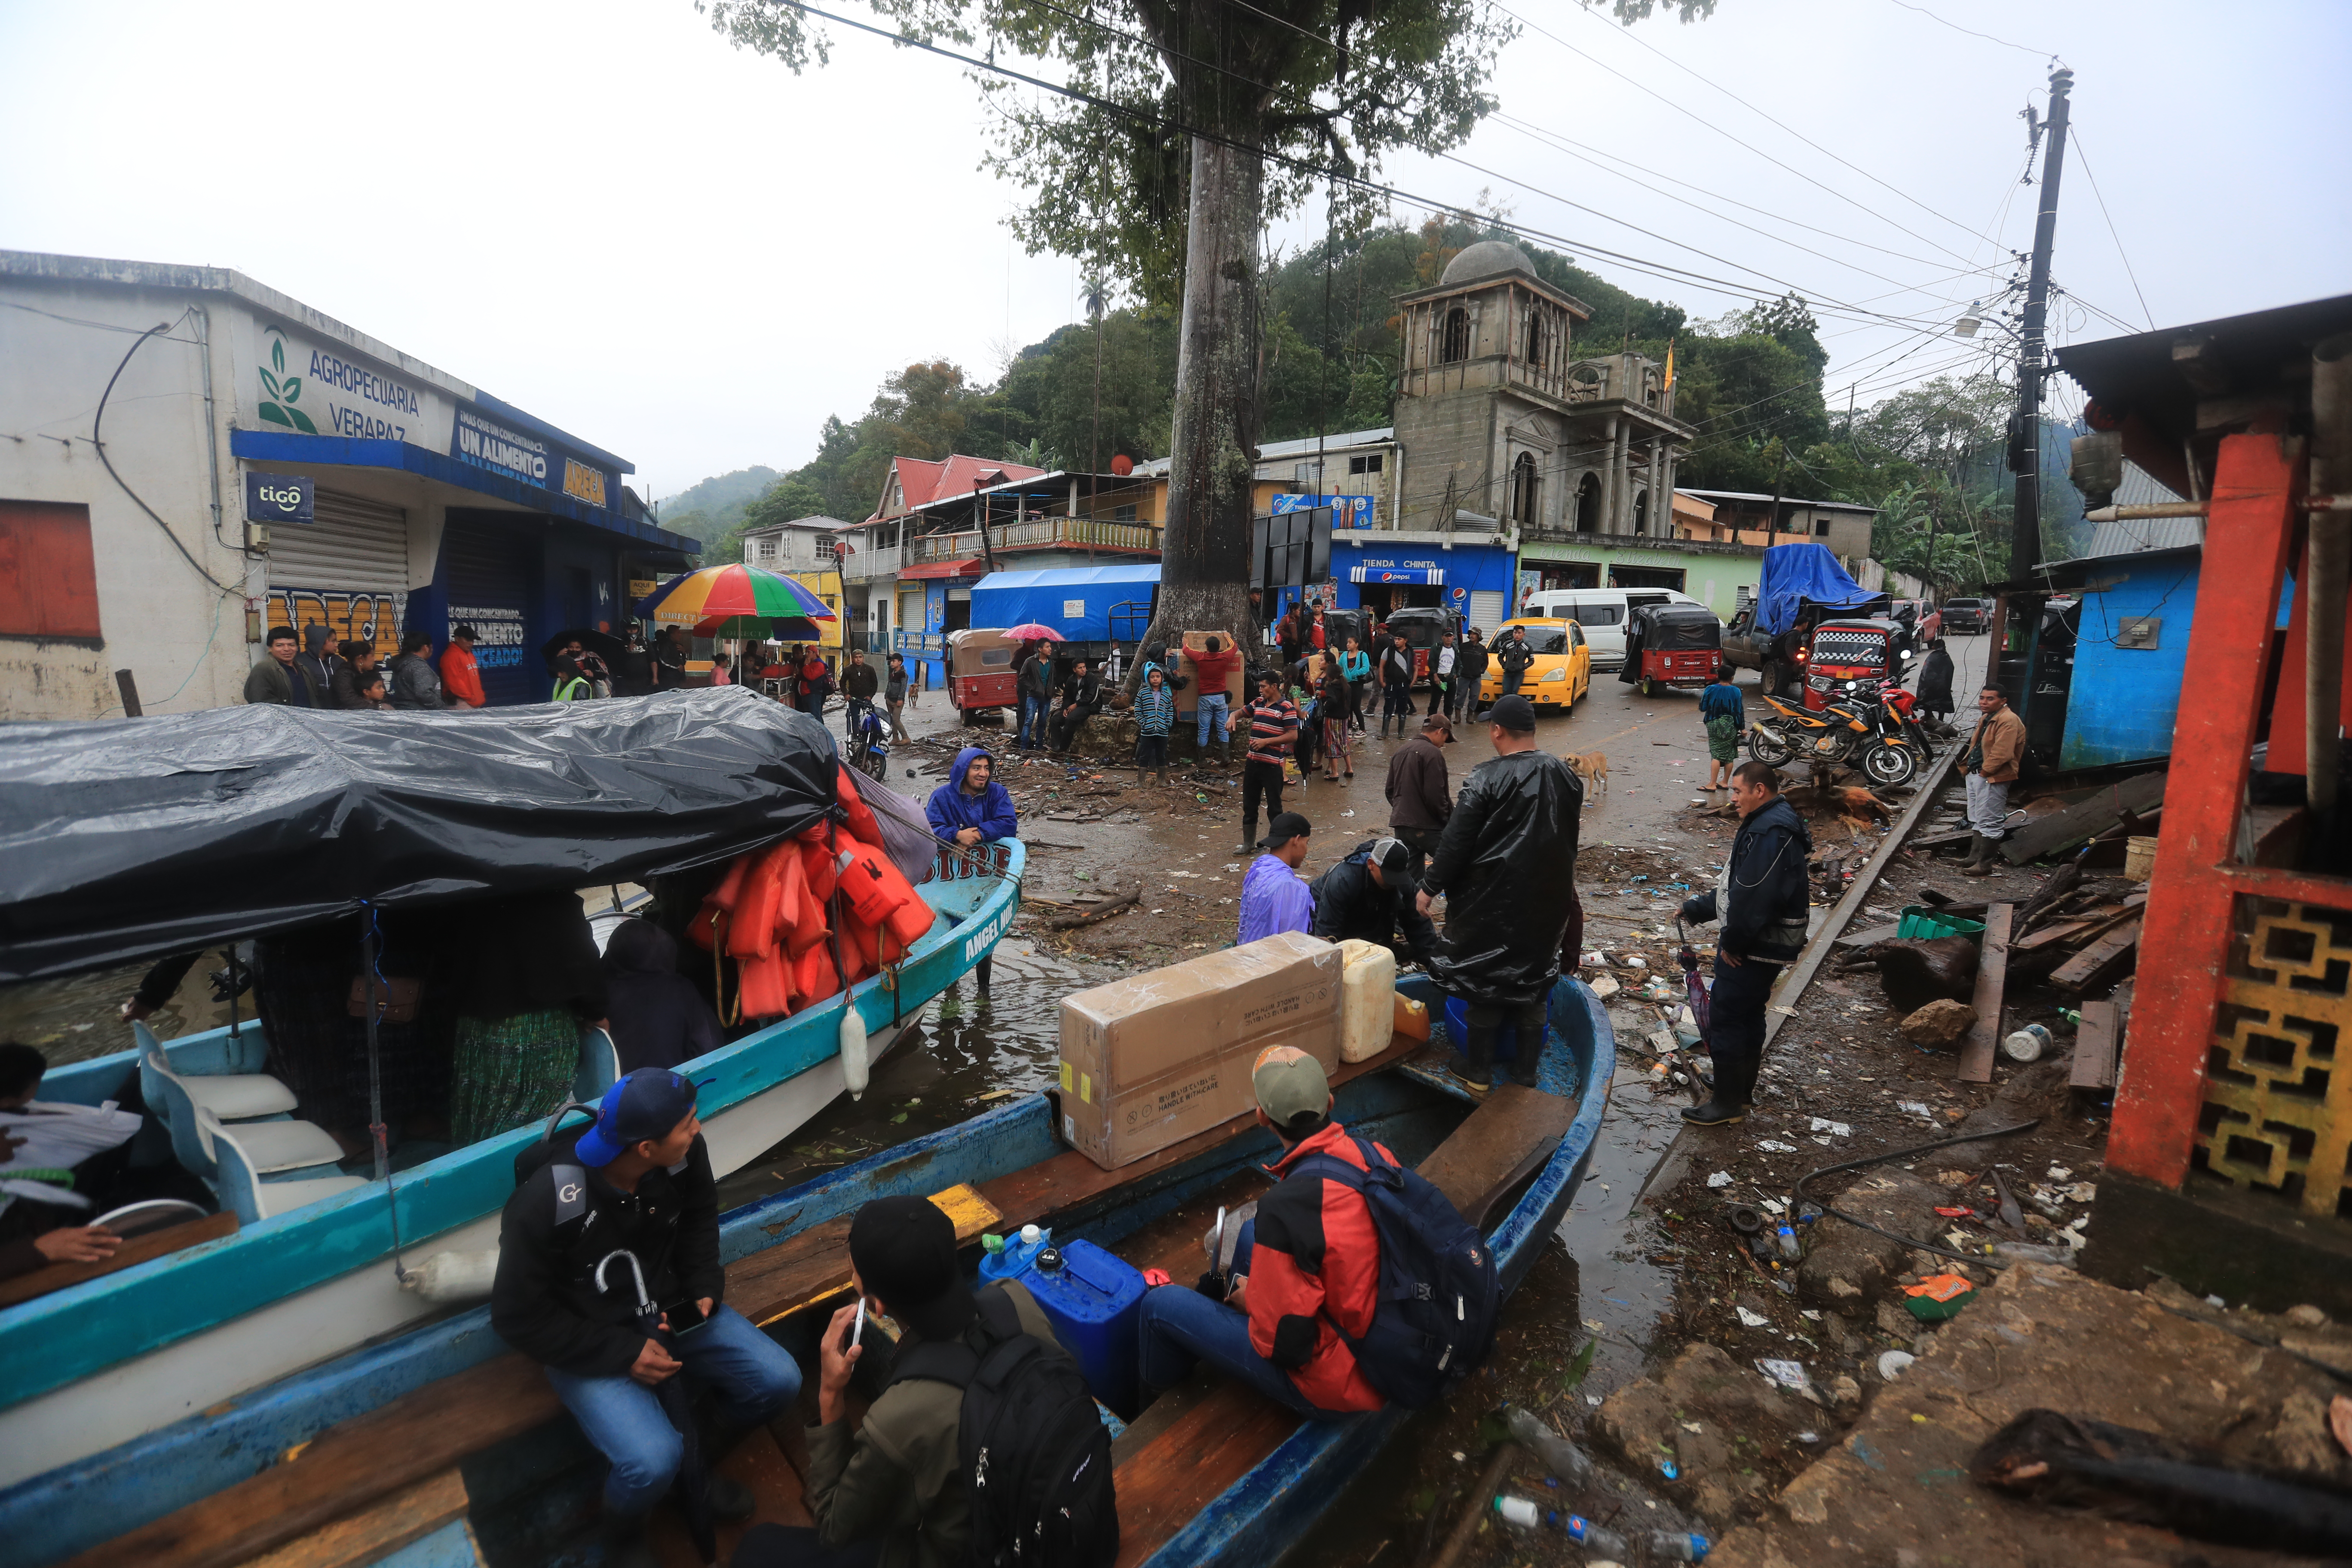 Campur, una comunidad de San Pedro Carchá, Cobán, quedó inundada tras el paso de las tormentas Eta e Iota. Se estima que más de 500 viviendas quedaron bajo el agua. (Foto Prensa Libre: Hemeroteca PL)